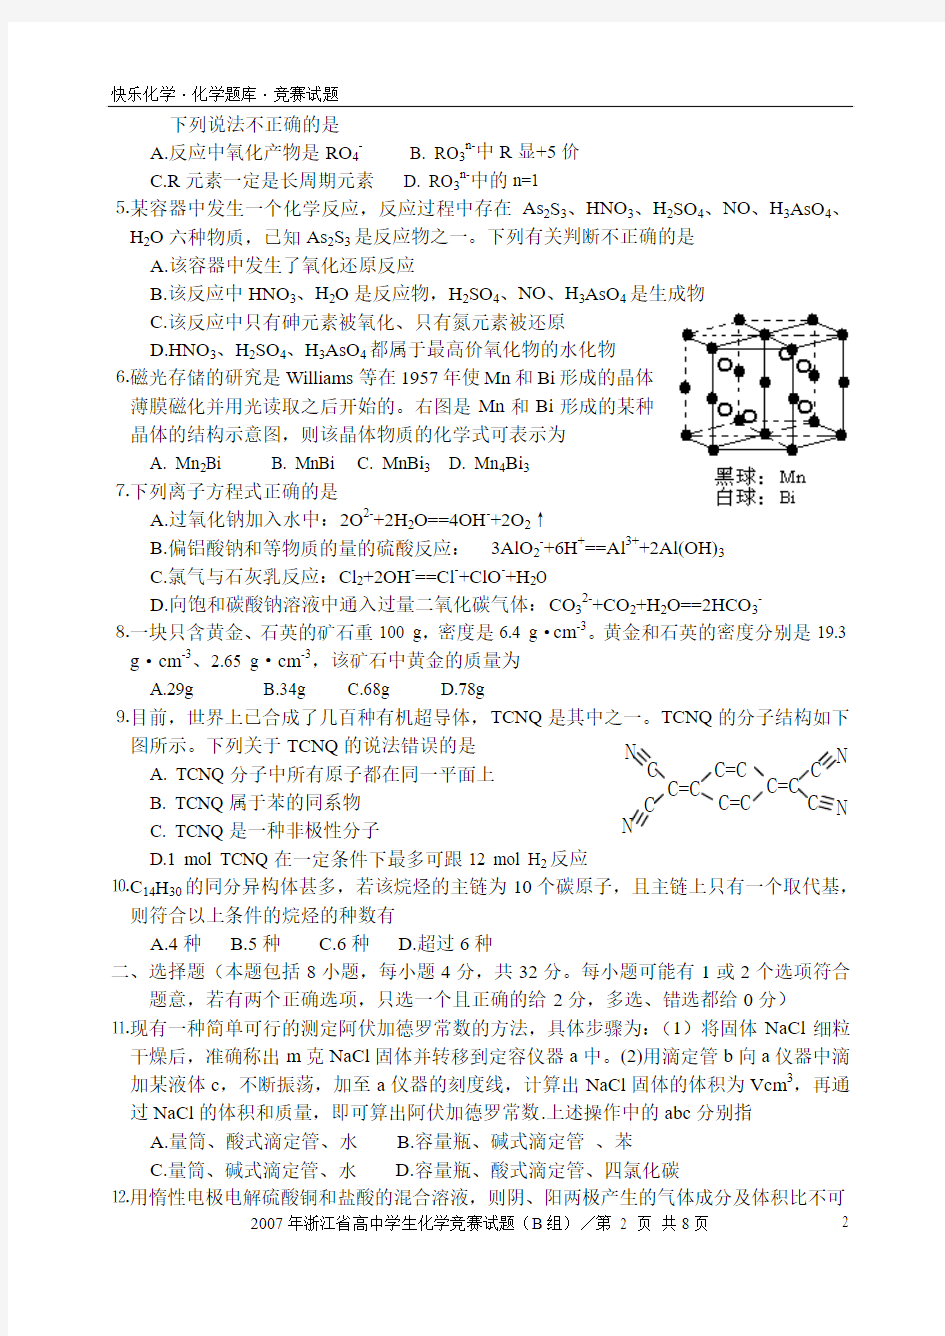 2007年浙江省高中学生化学竞赛试题(B组)(含答案)